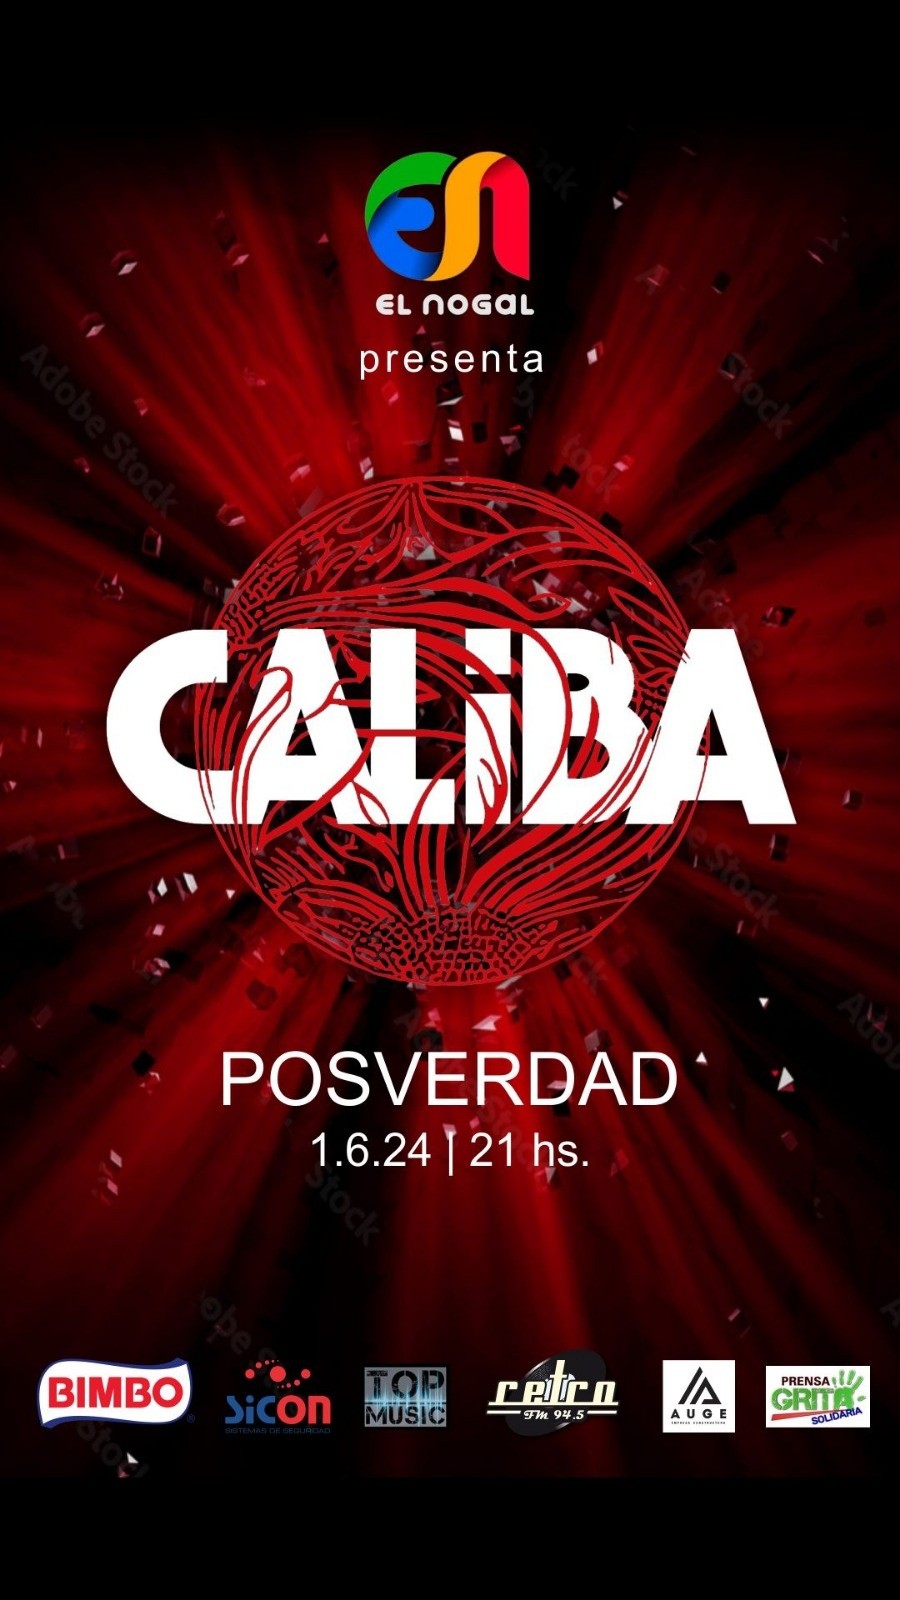 1/6 - Caliba presenta Posverdad en El Nogal